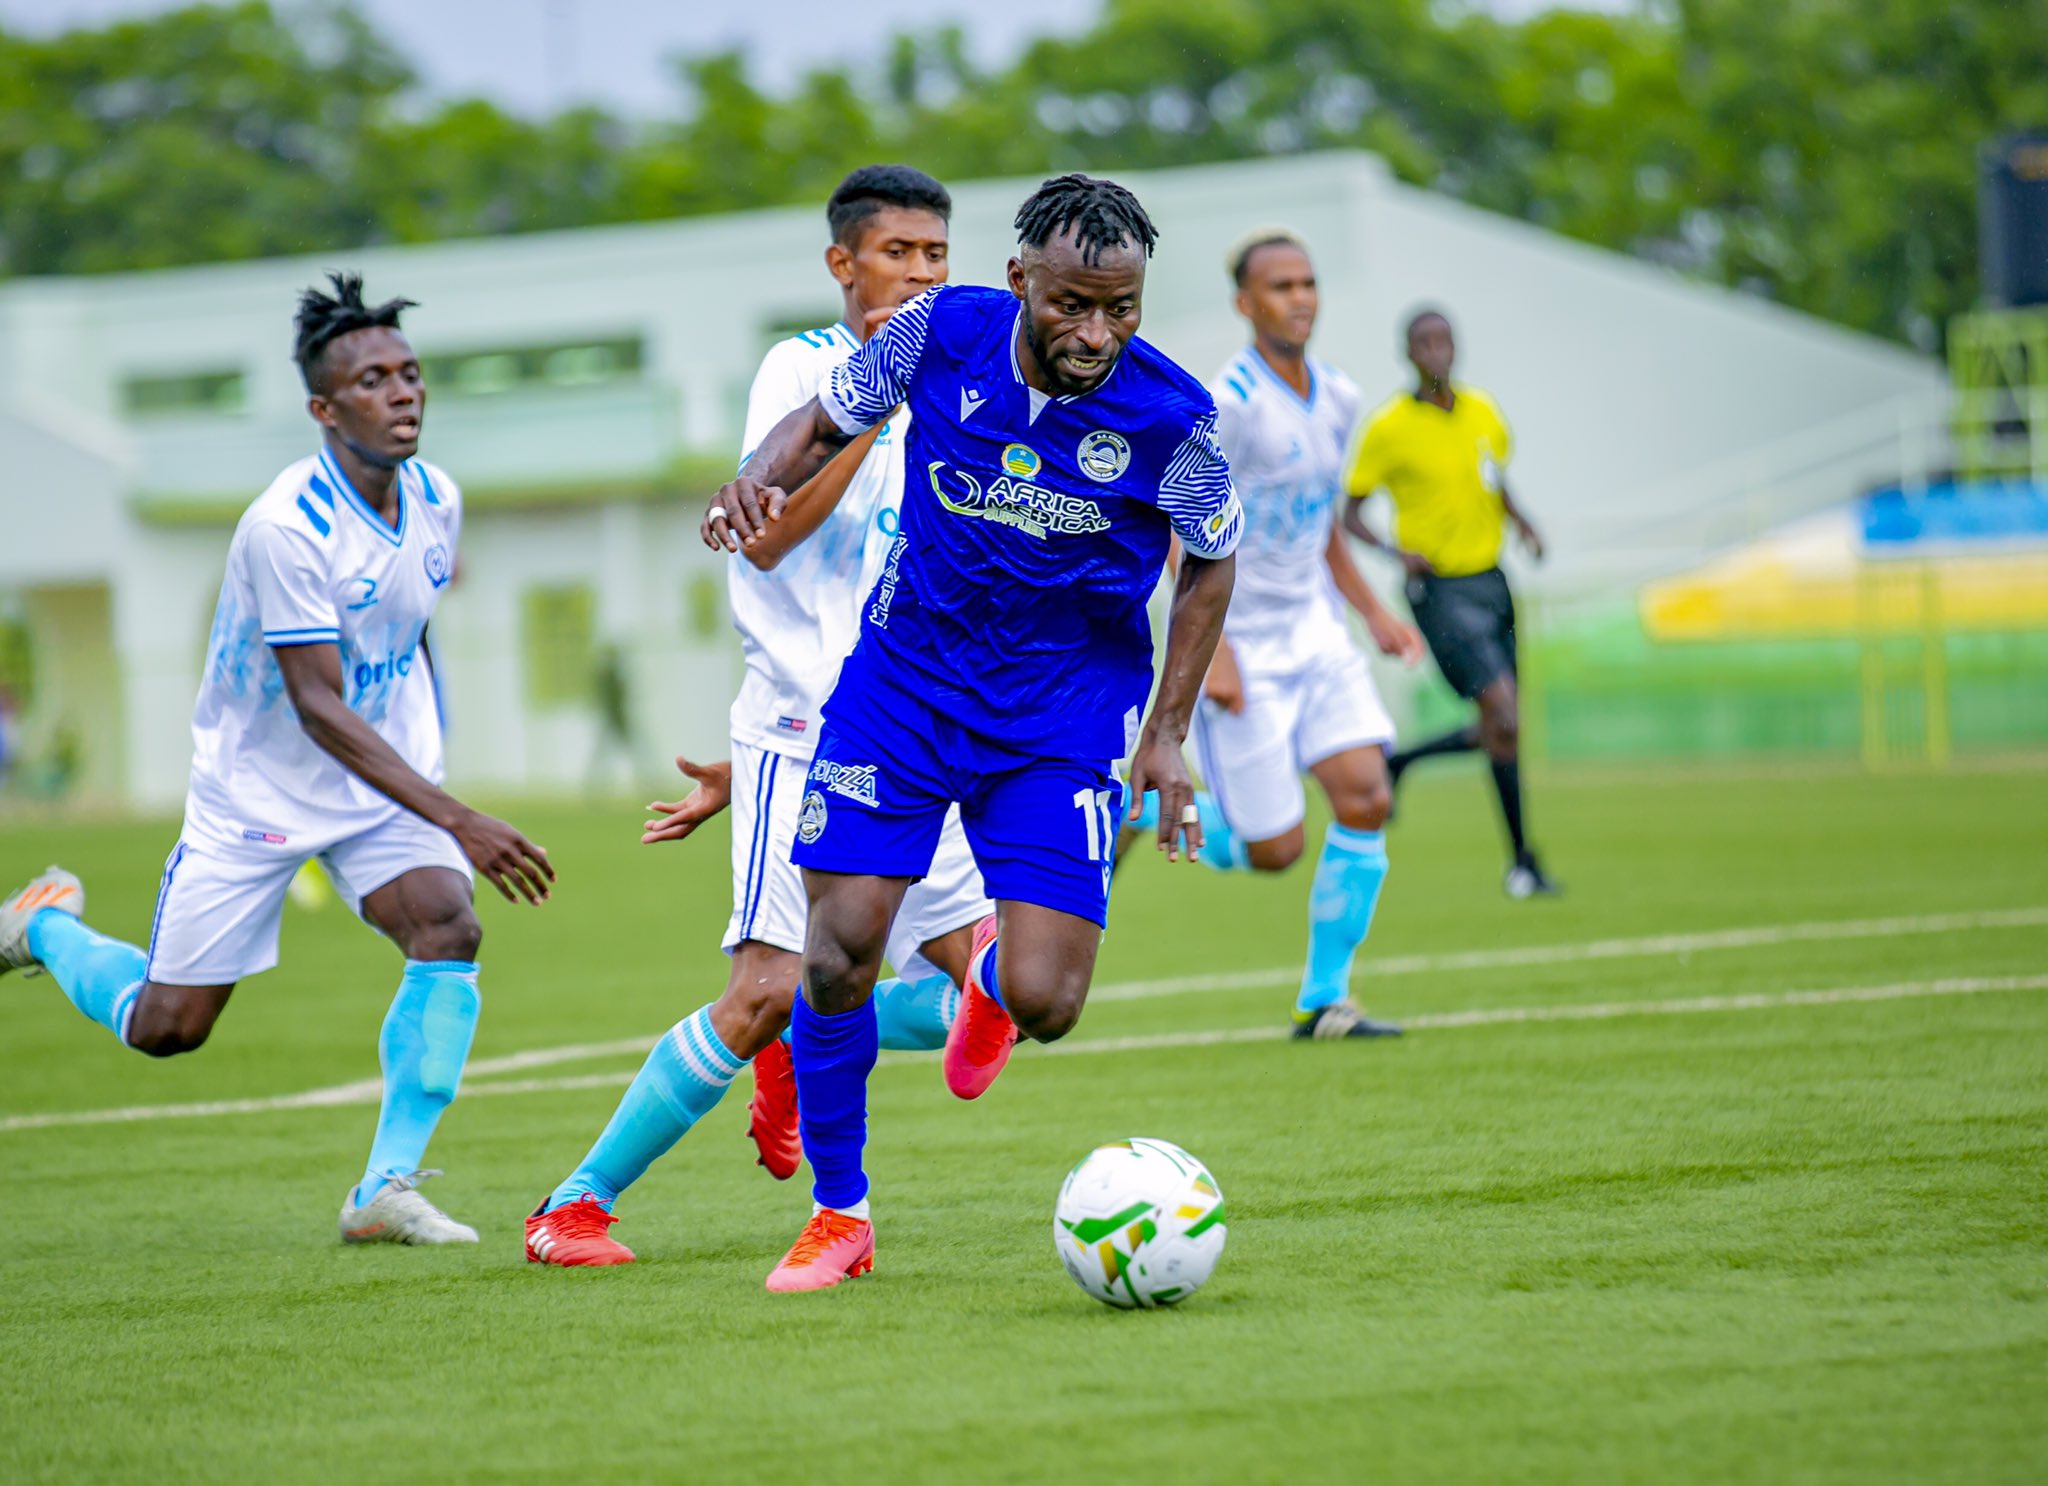 Tourisme, Mwahani tsena pour le tourisme !, Comoros Football 269 | Portail du football des Comores